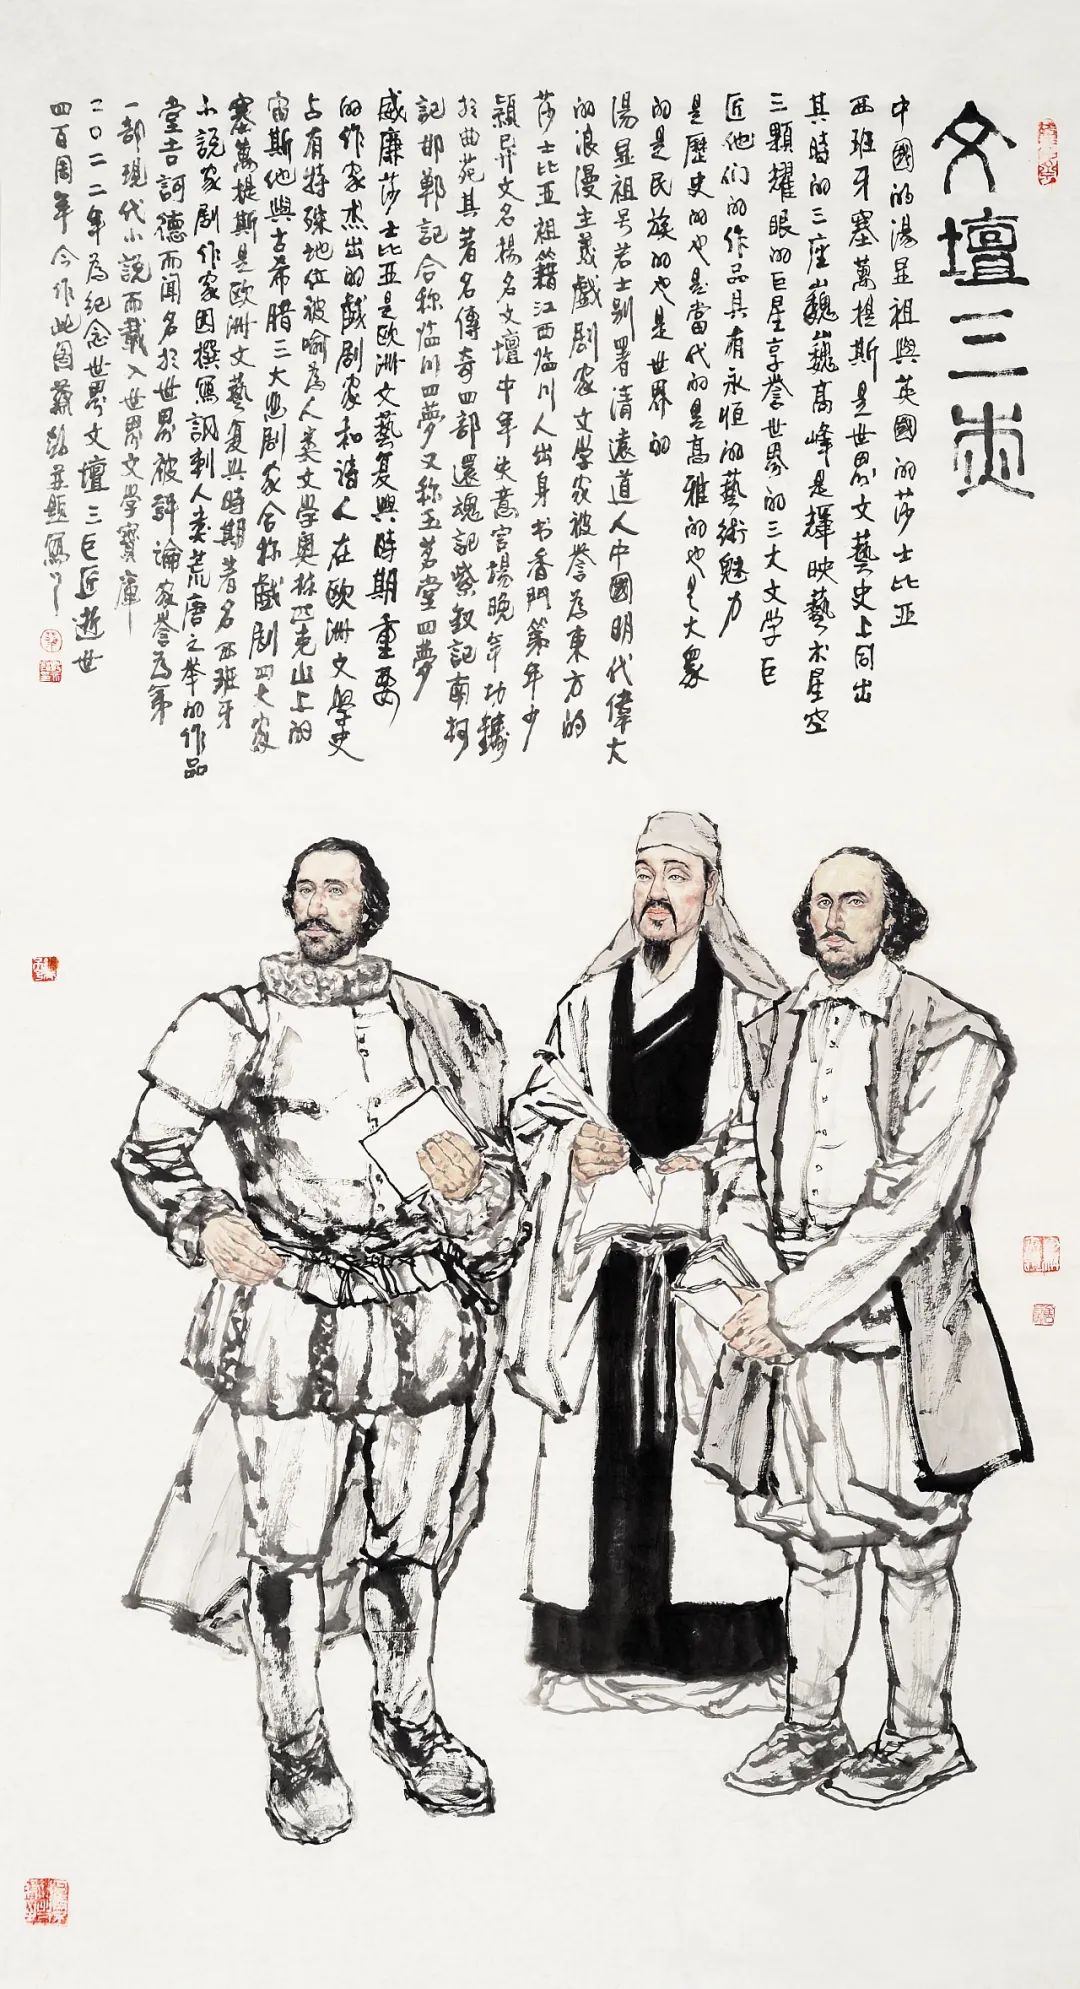 《纪念汤显祖》  蔡超  中国画  179cm×97cm